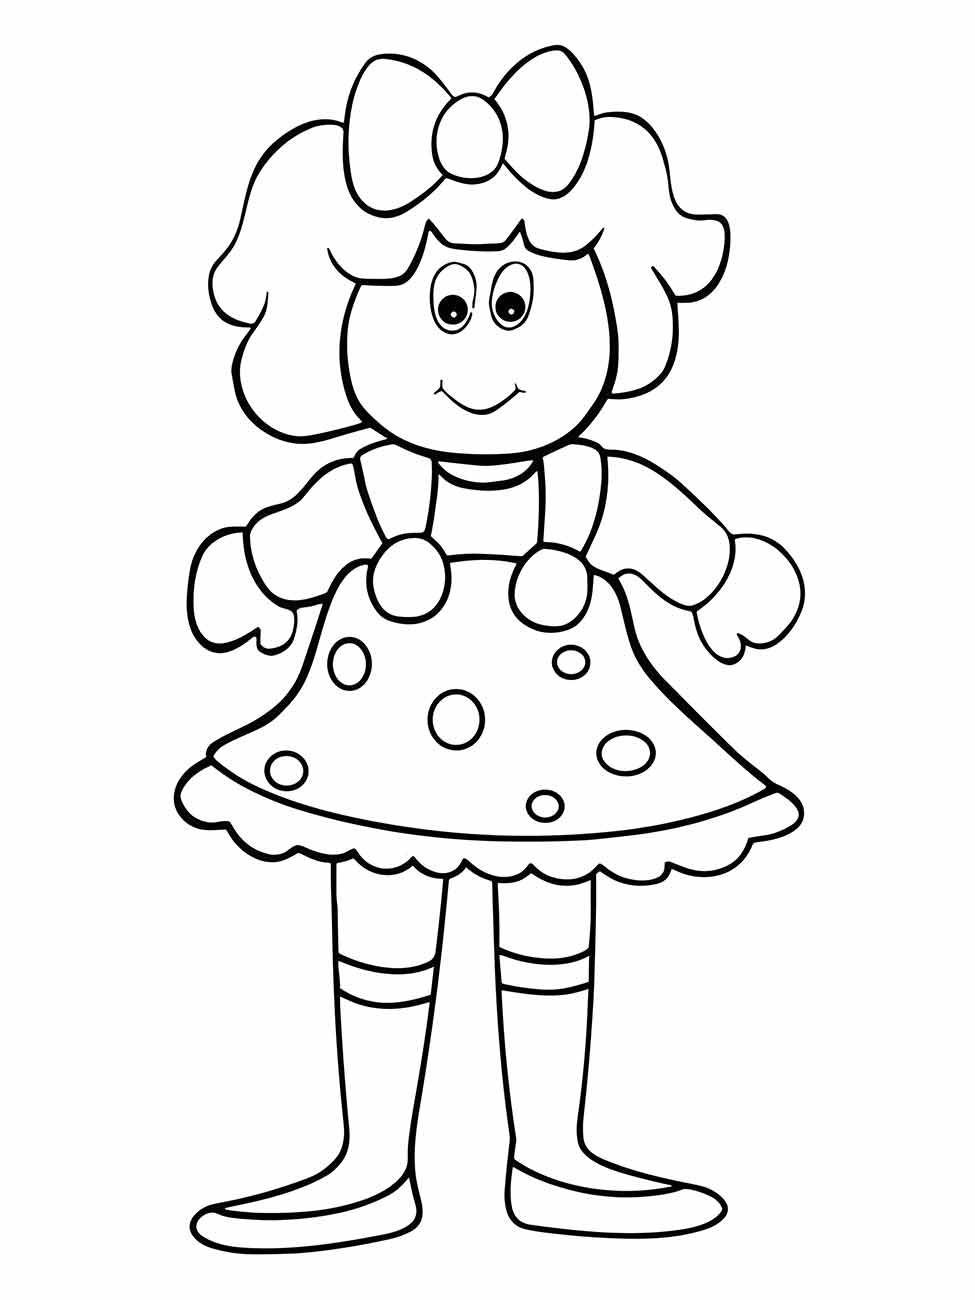 Desenho de Boneca com um Belo Cabelo Comprido para colorir